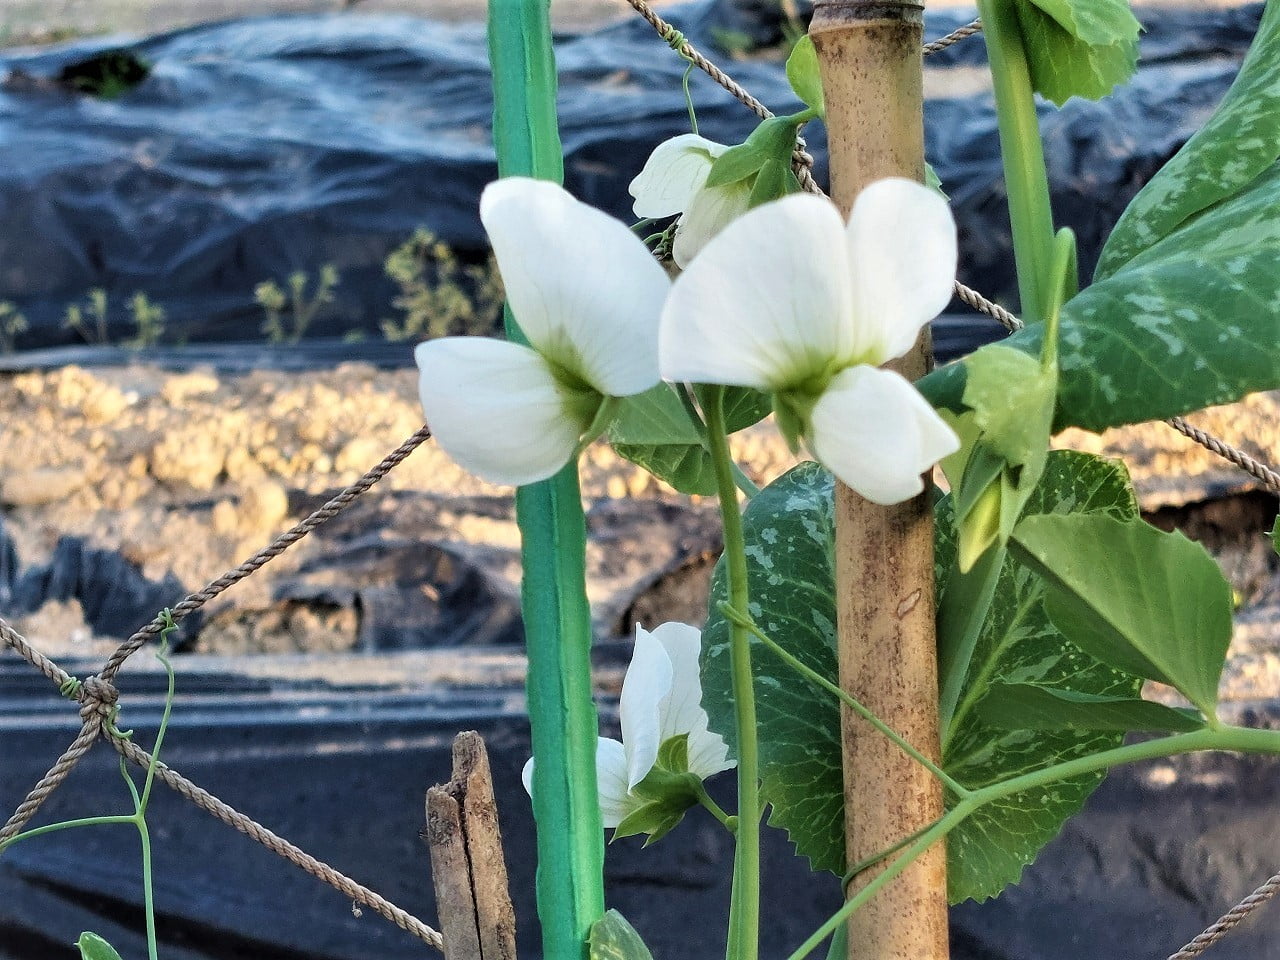 スナップエンドウに可愛らしい花が咲きました 中津市議会議員 大塚正俊